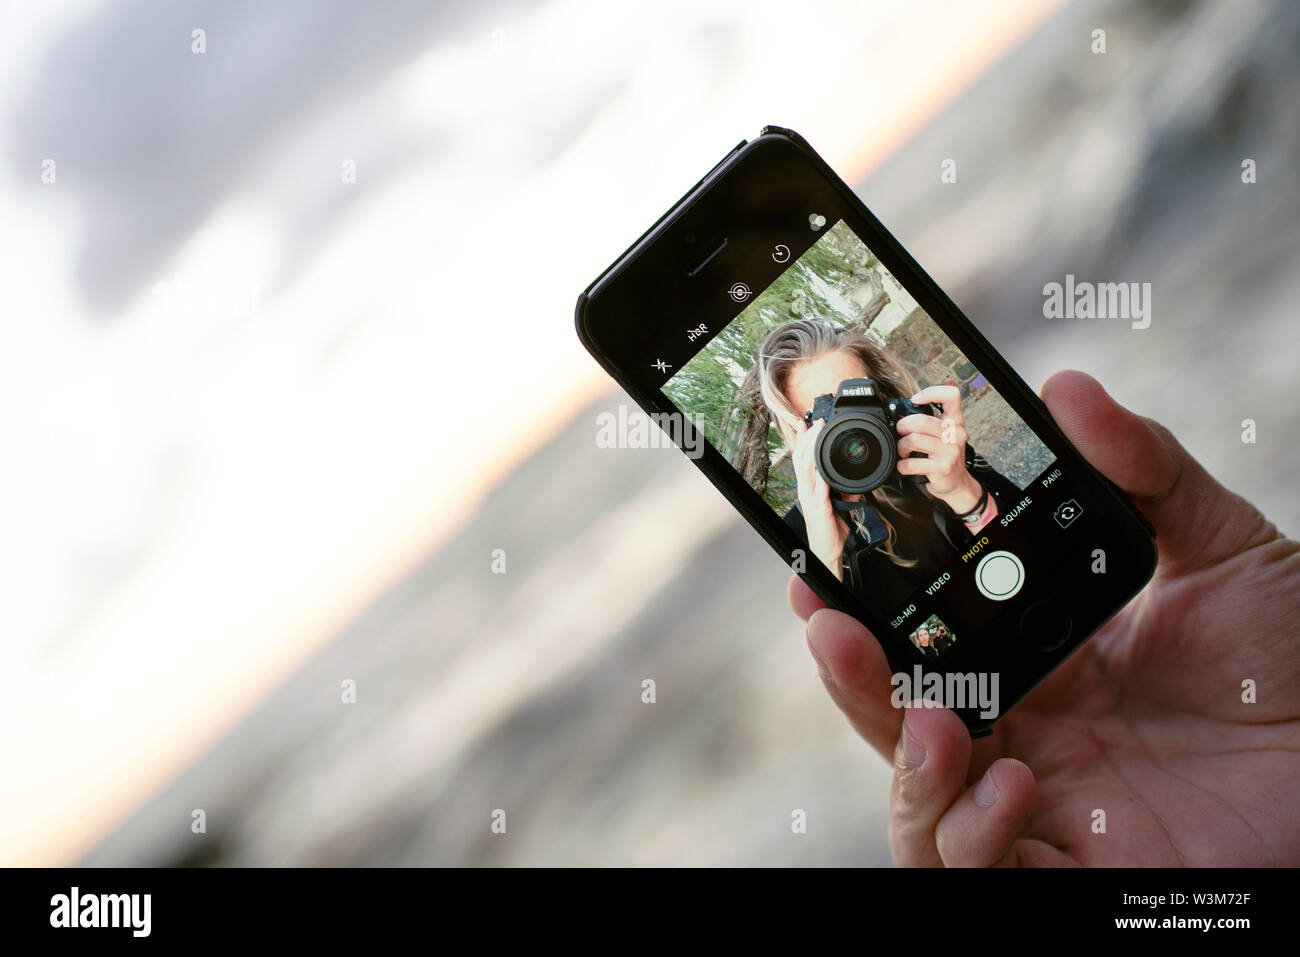 Fotografo femminile prendendo un self-portrait/ selfie mentre un uomo tenendo lo smartphone. Fotografia dello smartphone, iphoneography travel/ outdoor lifestyle Foto Stock